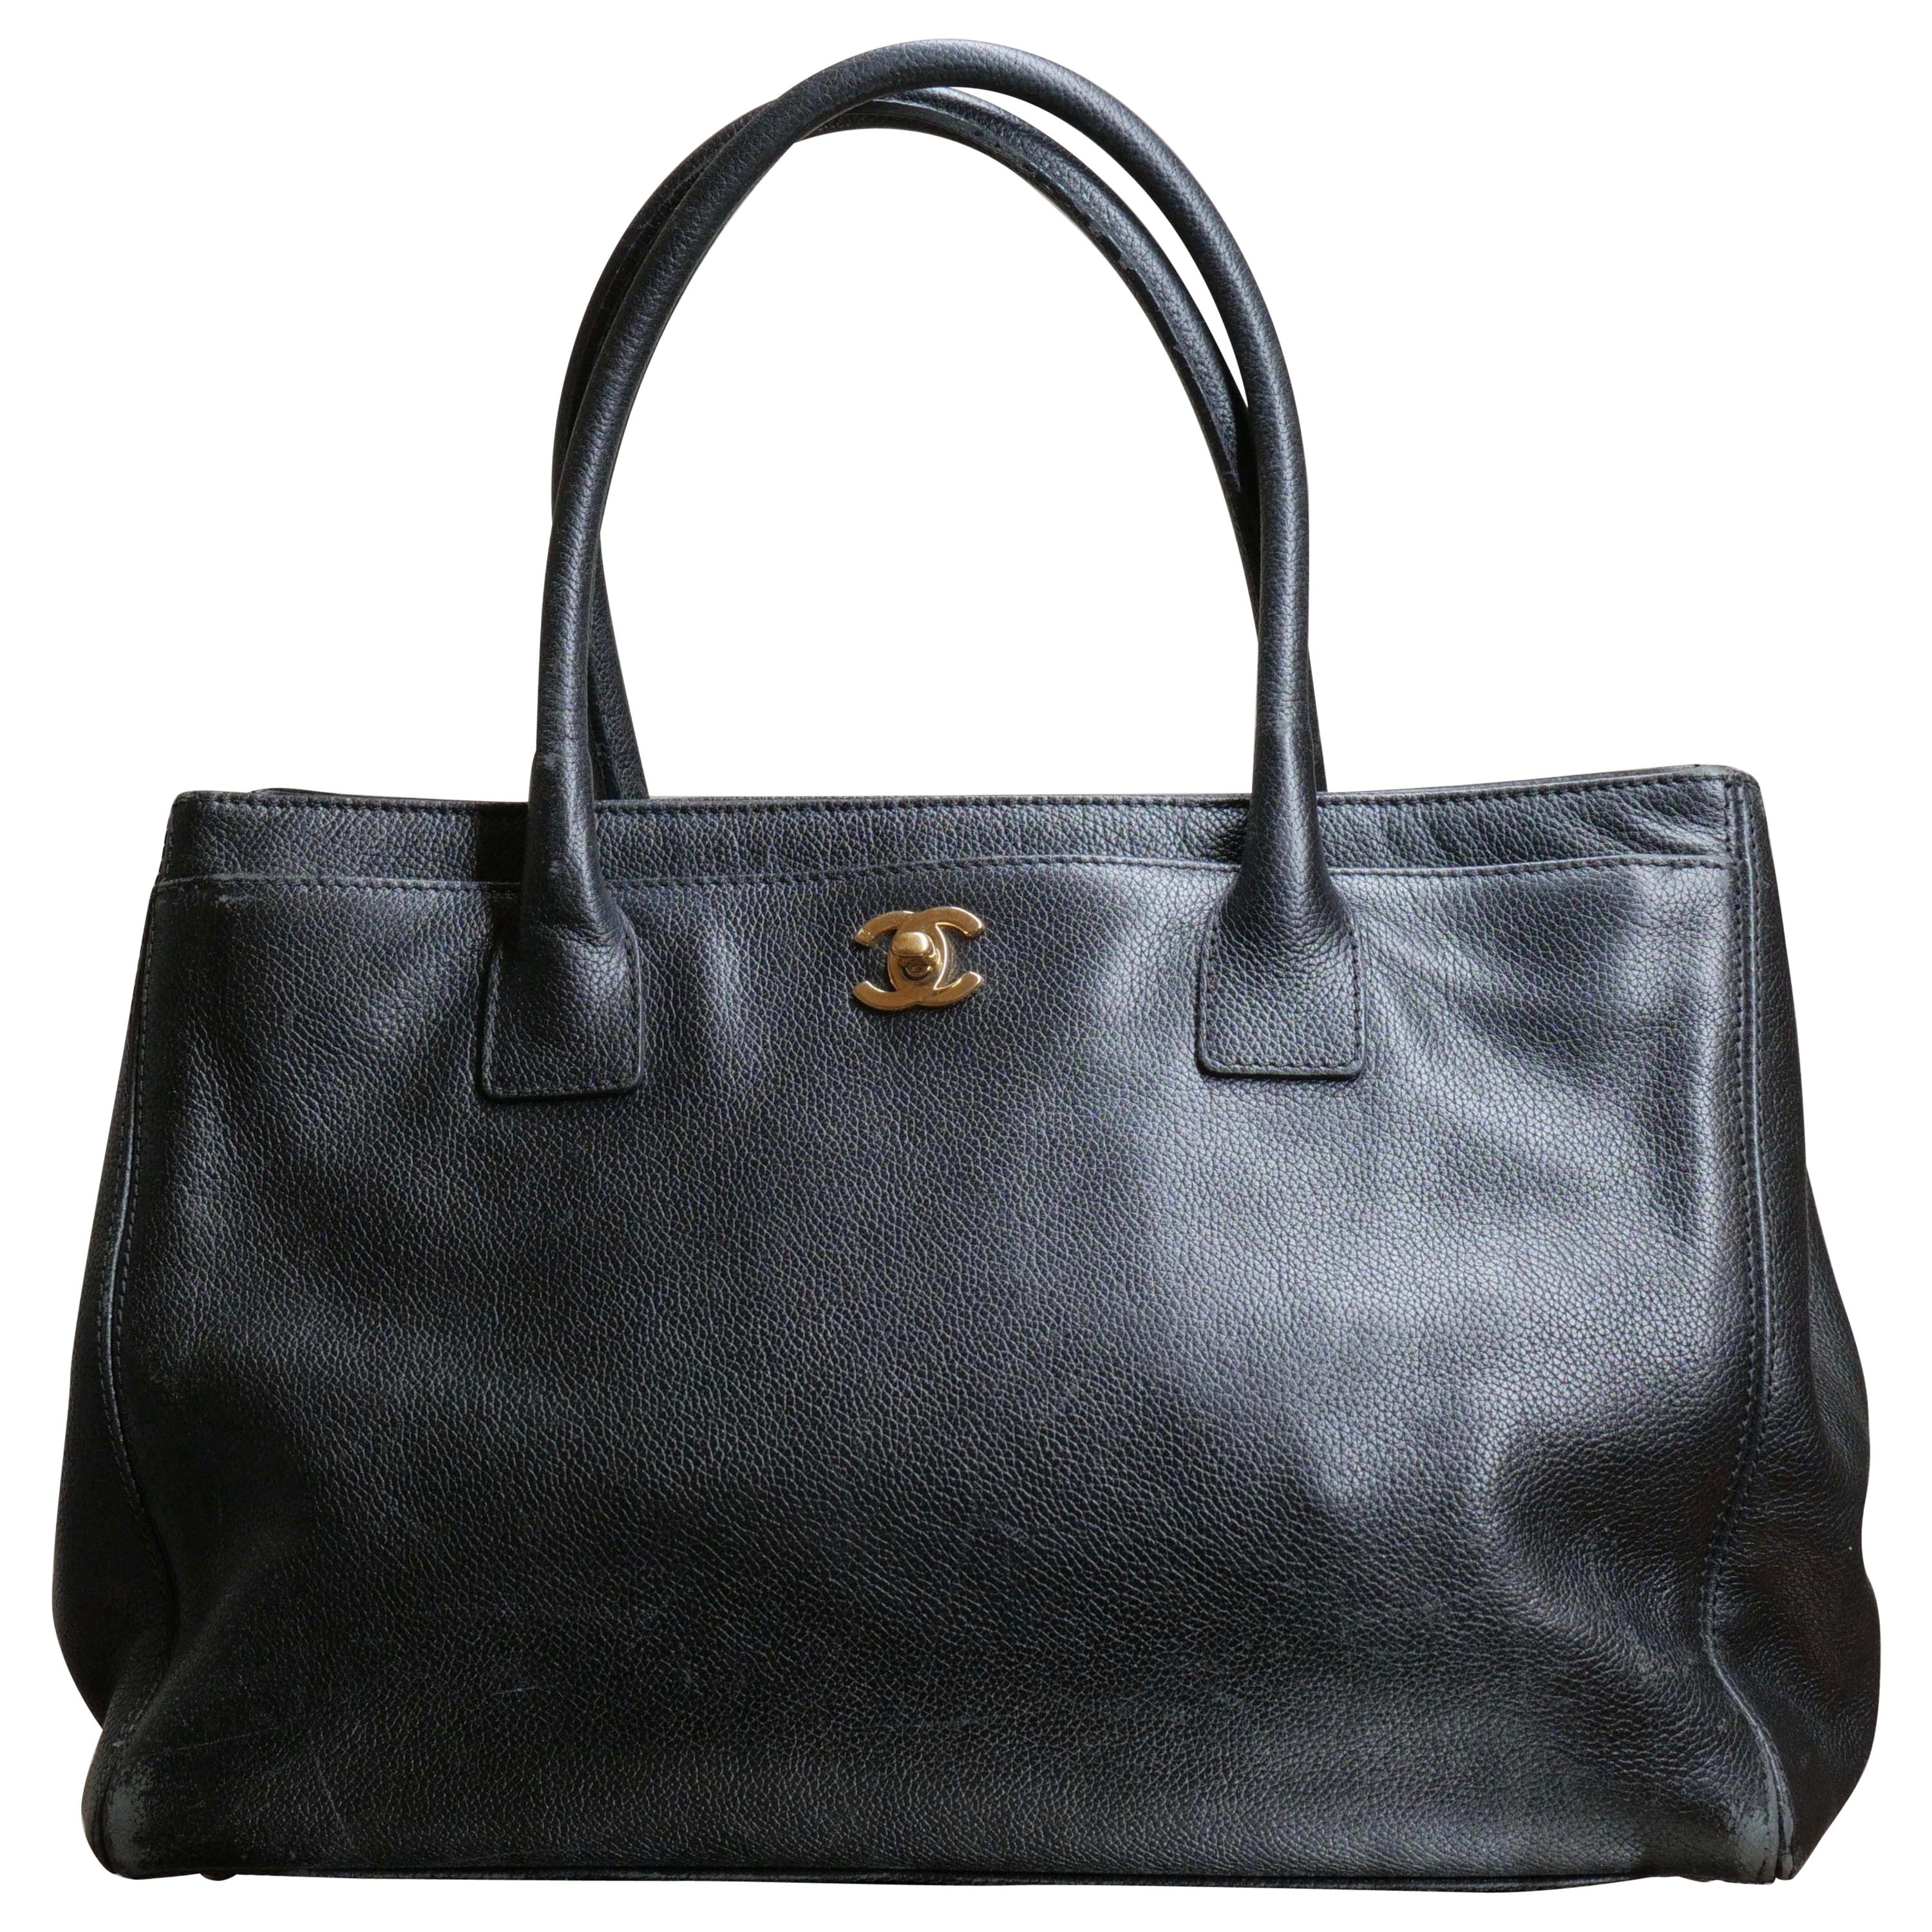 Chanel Cerf Tote Handbag